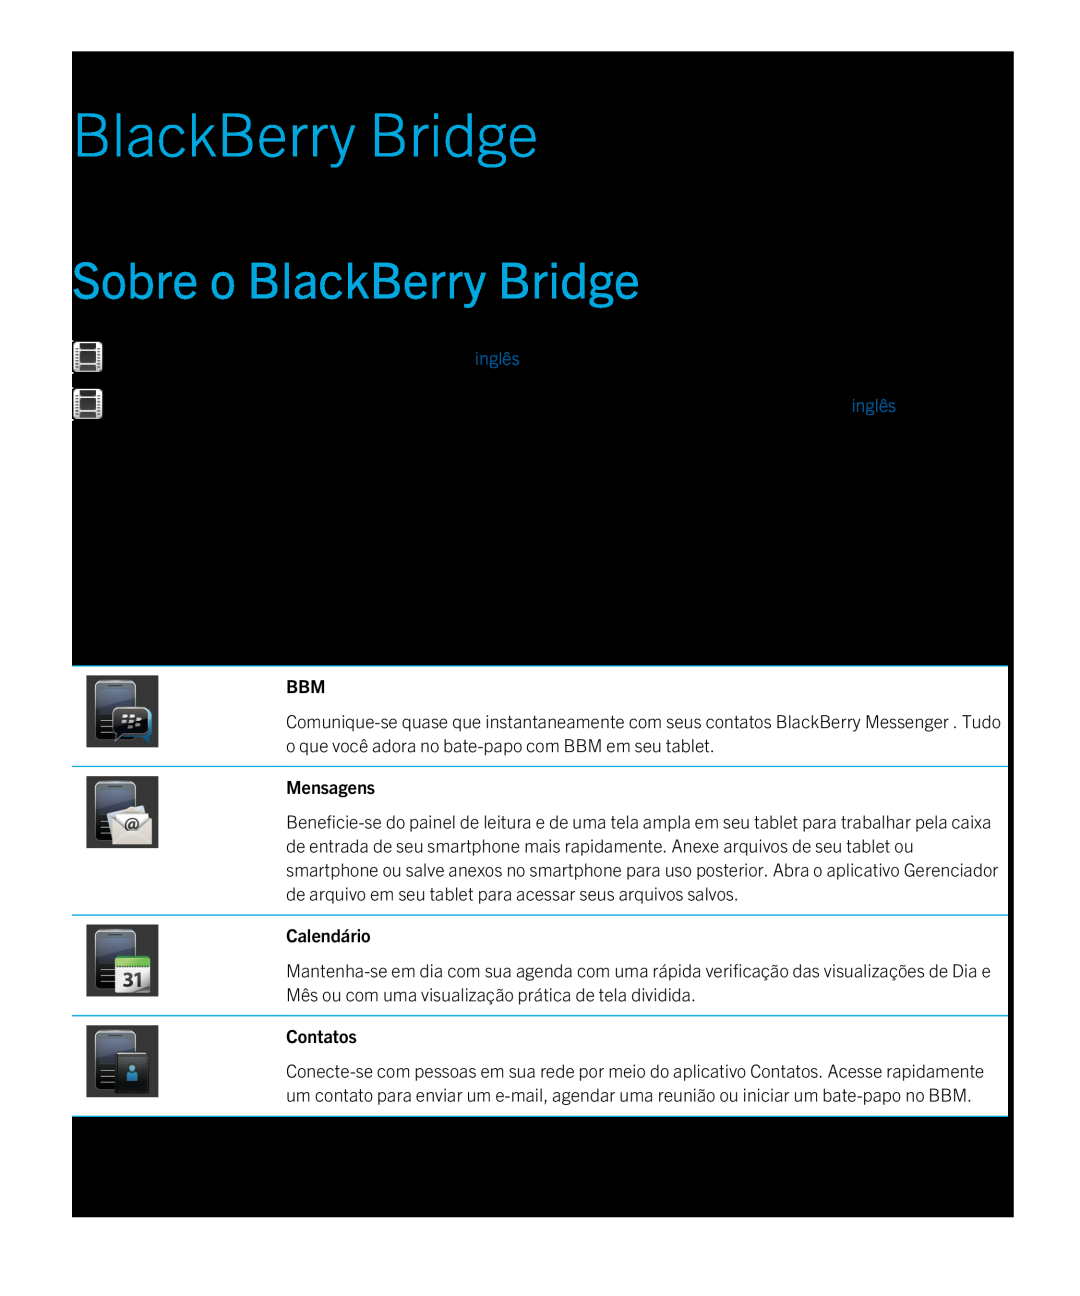 Blackberry 2.0.1 manual Sobre o BlackBerry Bridge, Calendário, Contatos, Mensagens 